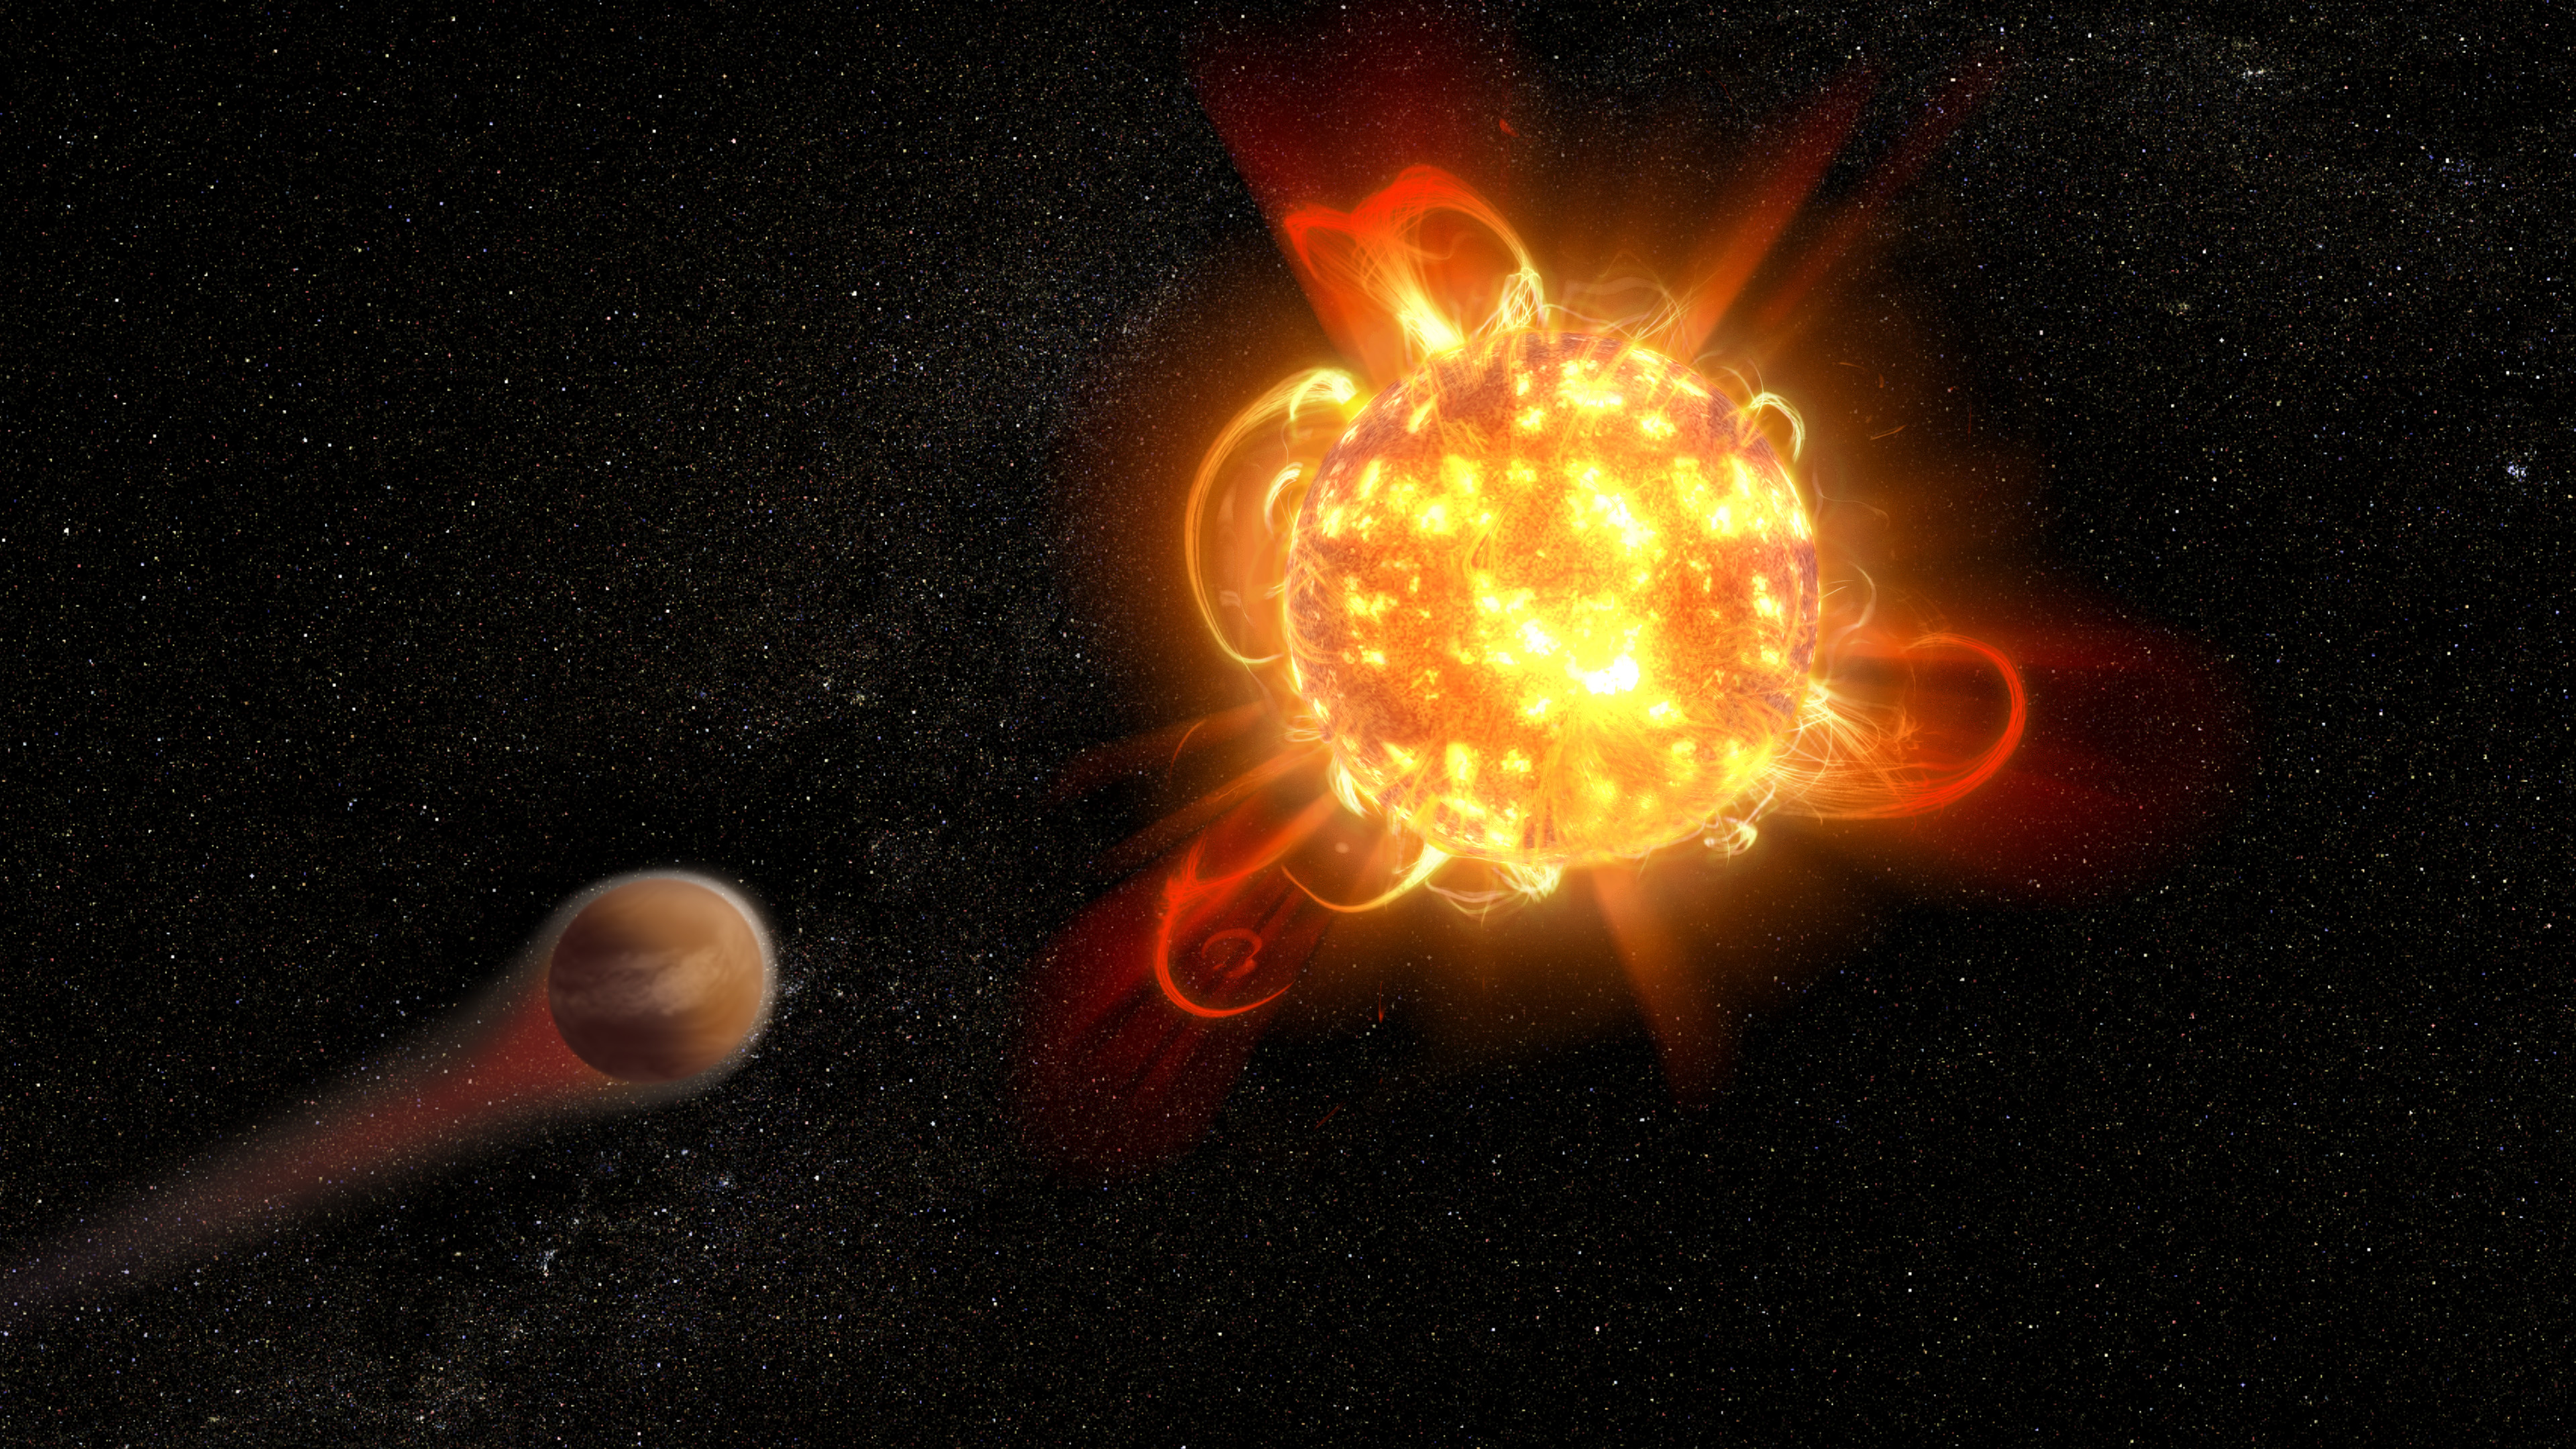 Supererupce červených trpaslíků nejspíš nemíří na planety. Kredit: NASA, ESA and D. Player (STScI).